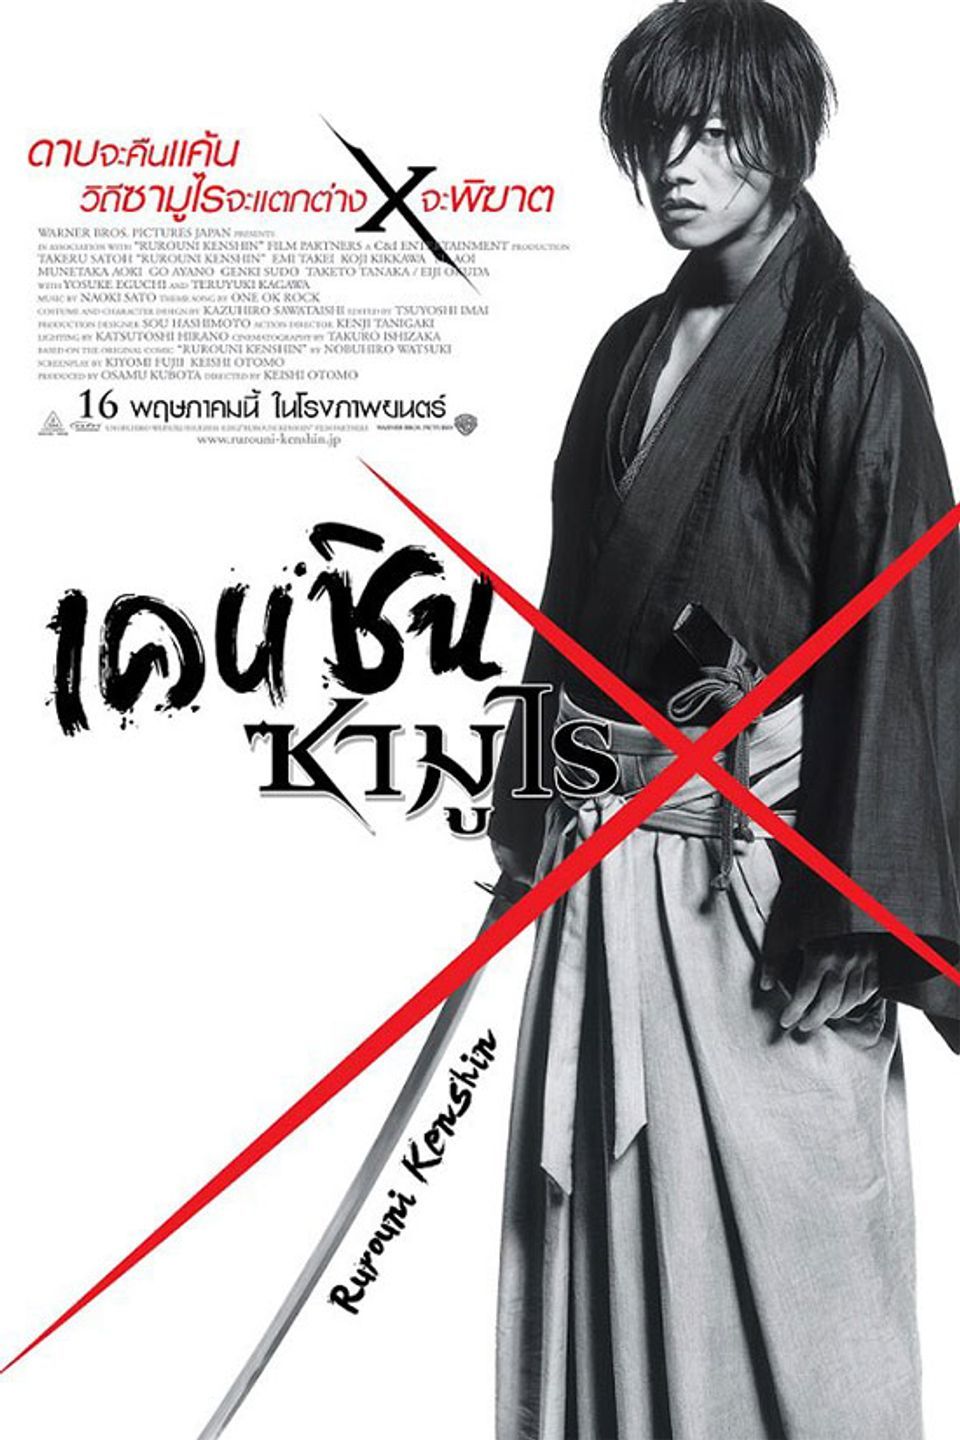 ภาพยนตร์ญี่ปุ่น “เคนชิน ซามูไร เอ็กซ์” (RUROUNI KENSHIN (SAMURAI X))